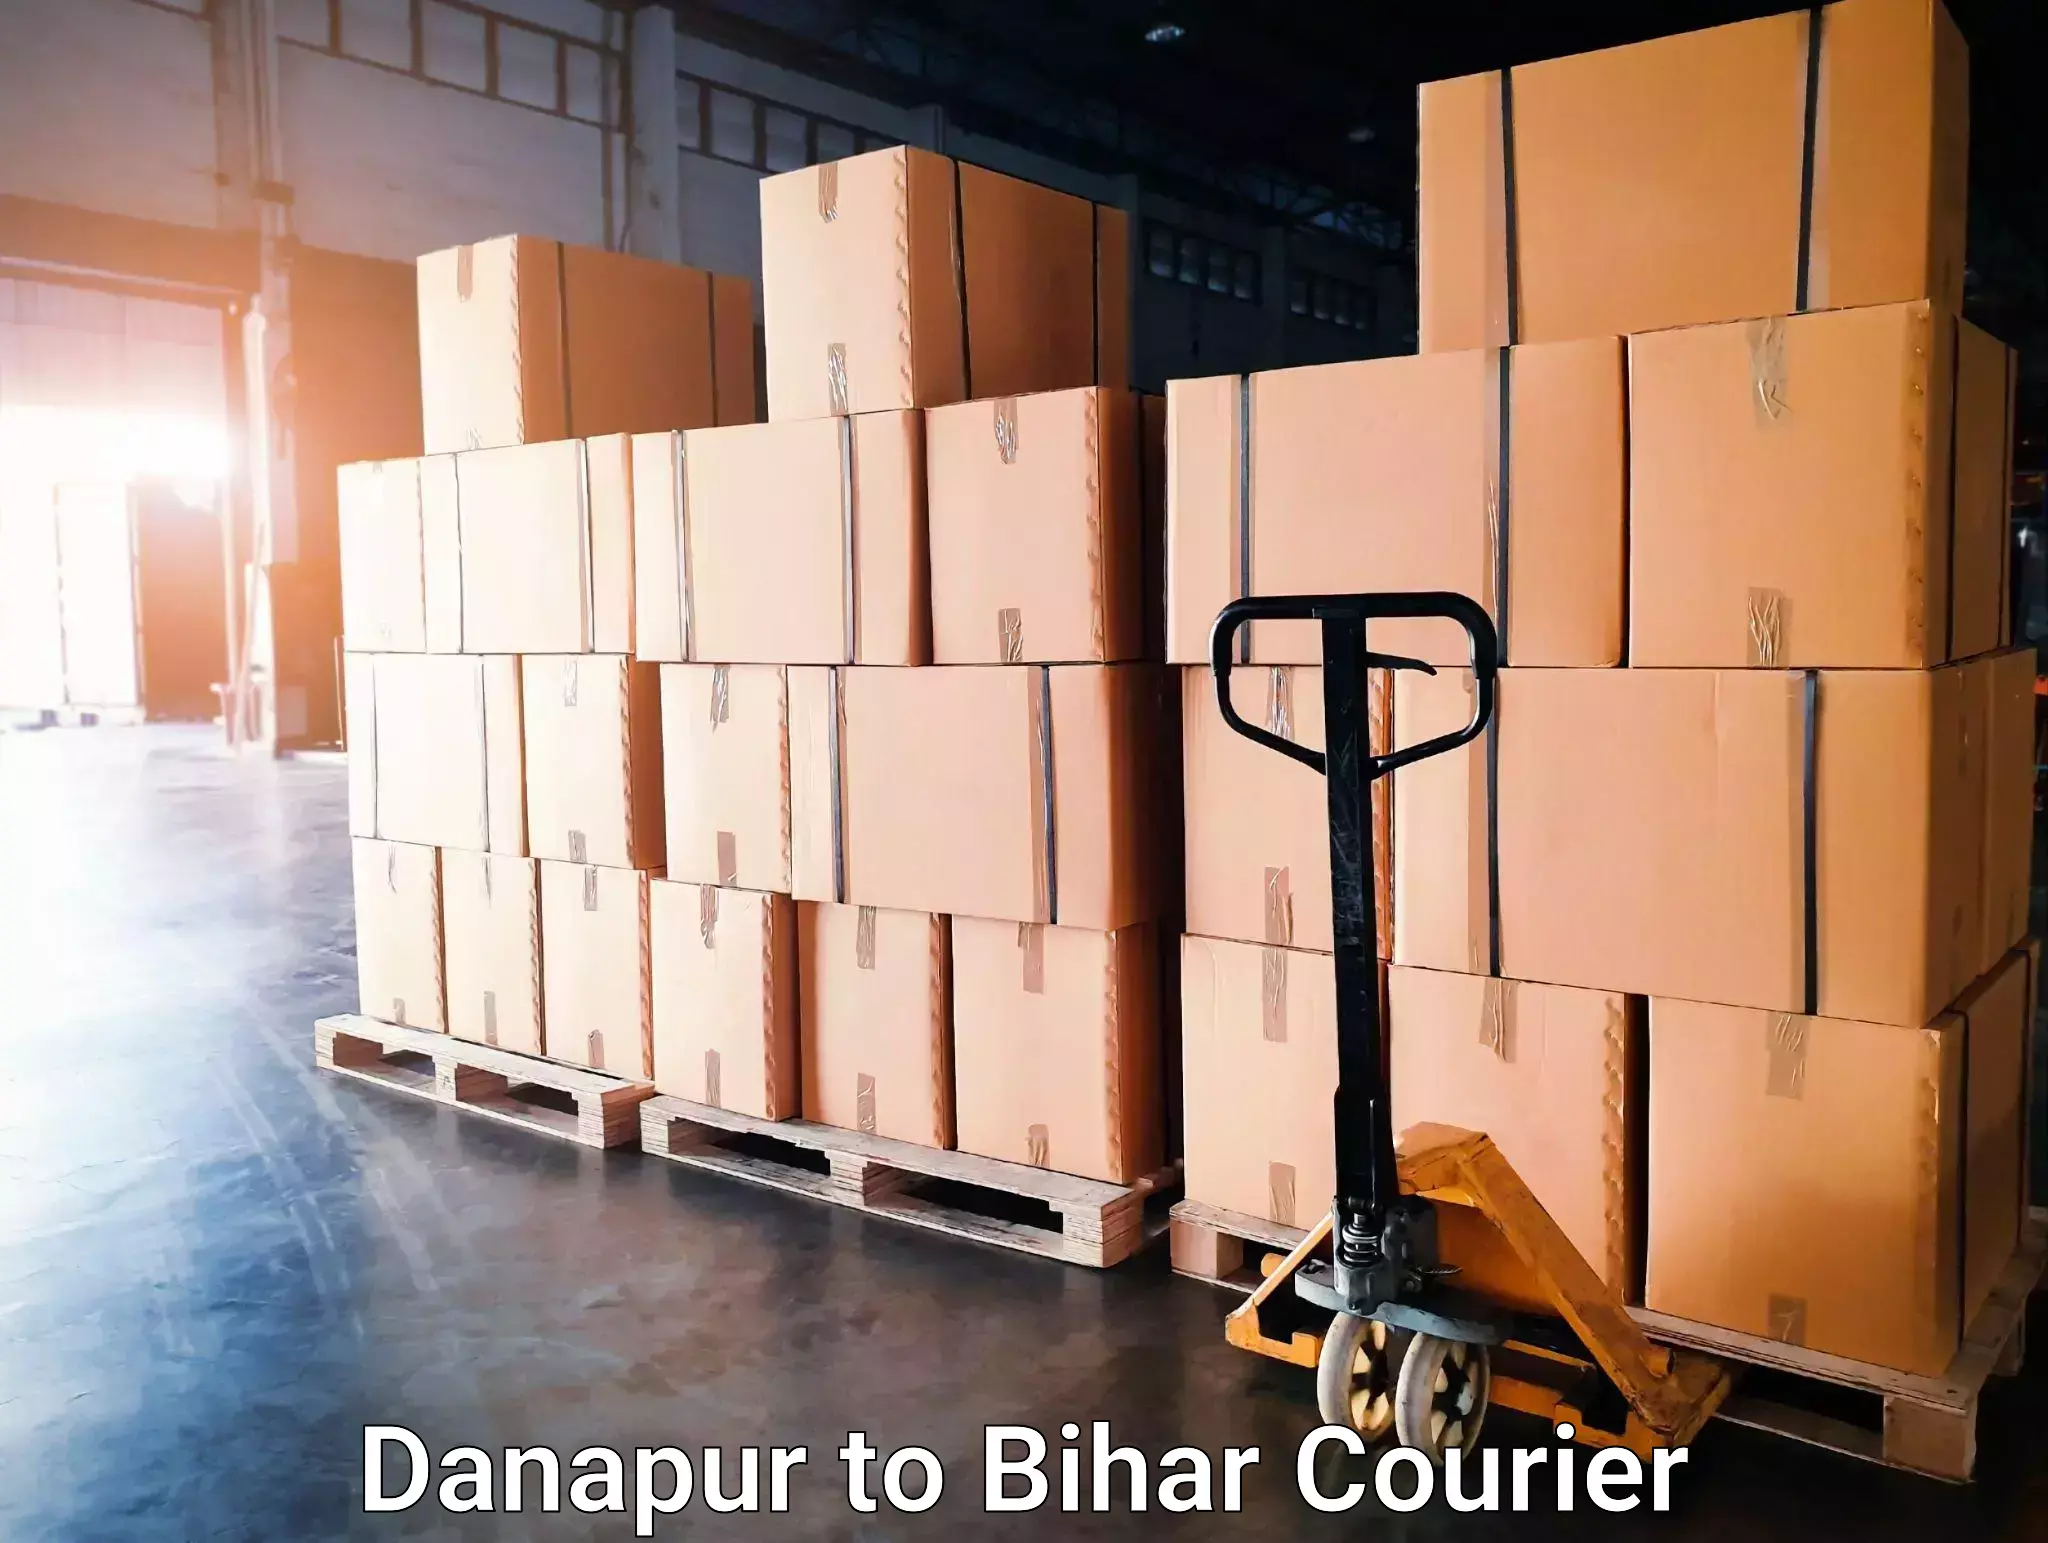 Furniture delivery service Danapur to Manjhaul